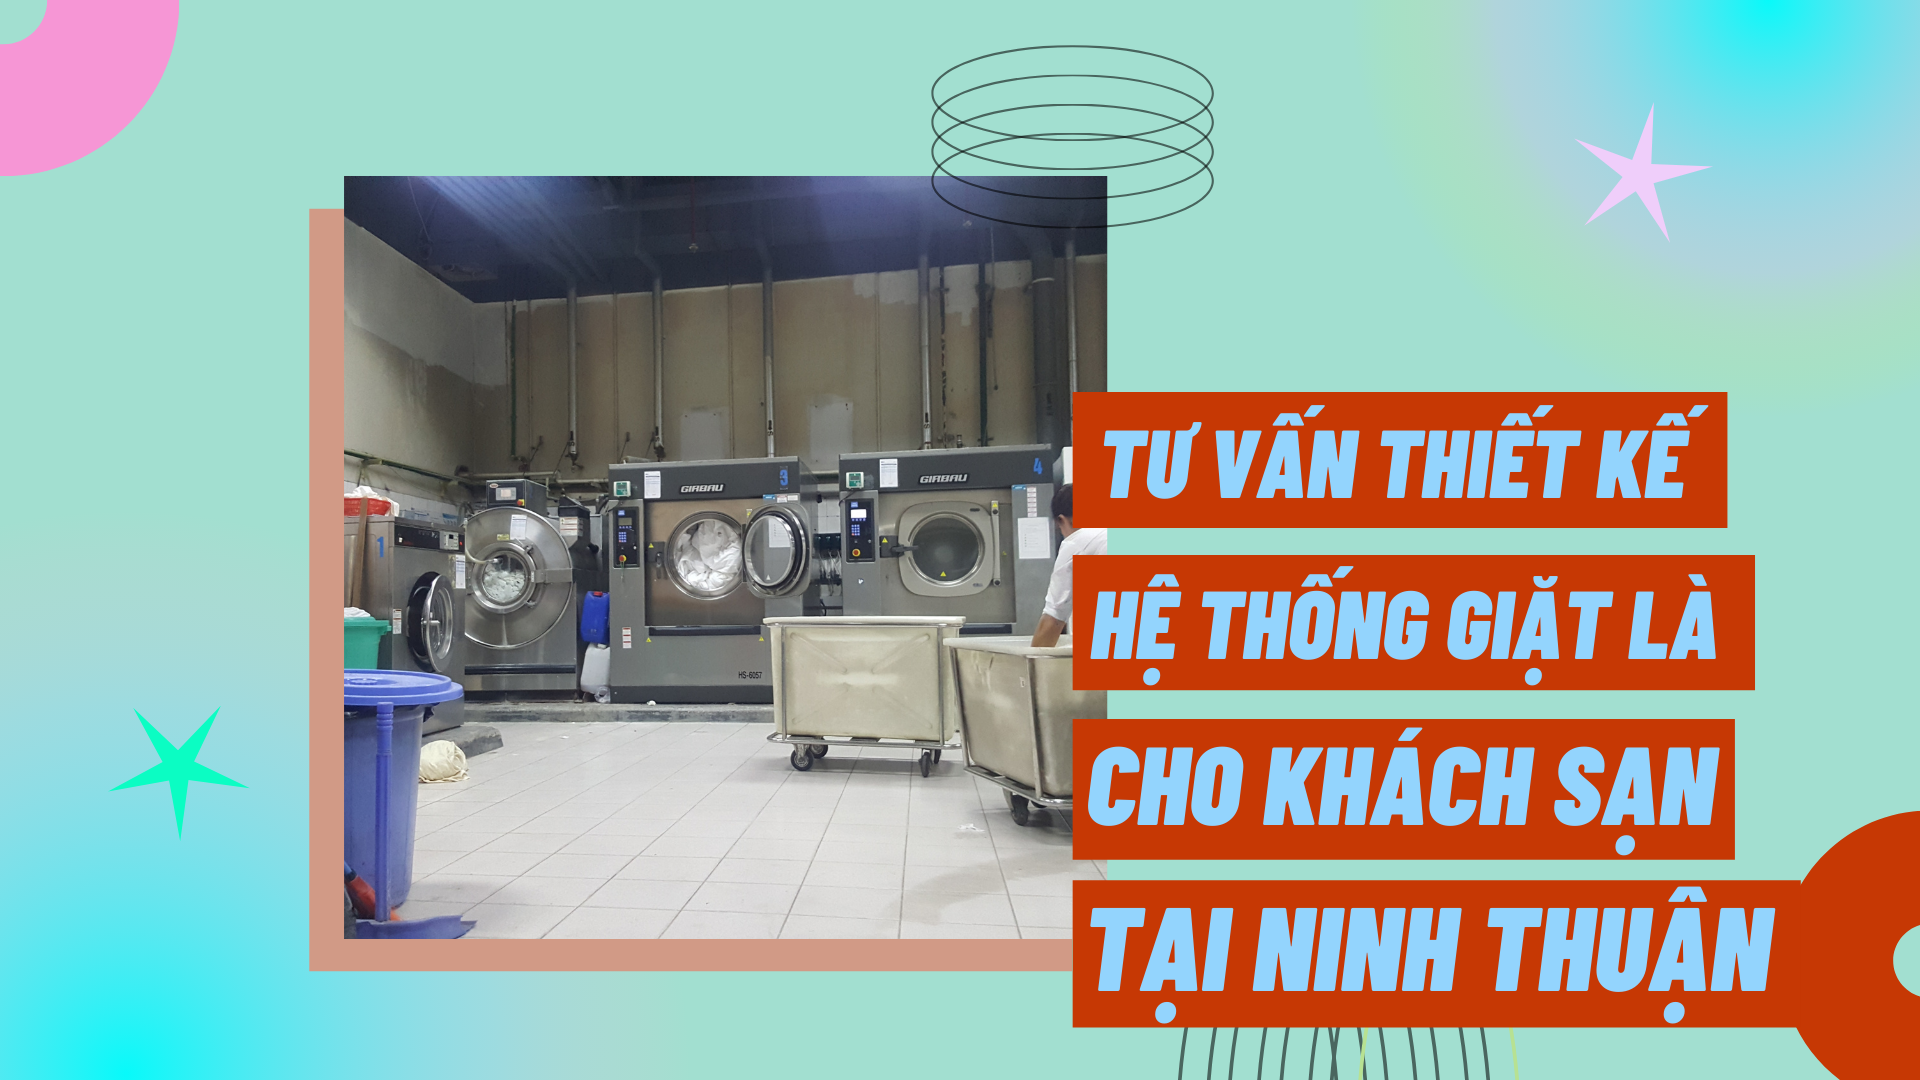 Tư vấn thiết kế hệ thống giặt là cho khách sạn tại Ninh Thuận